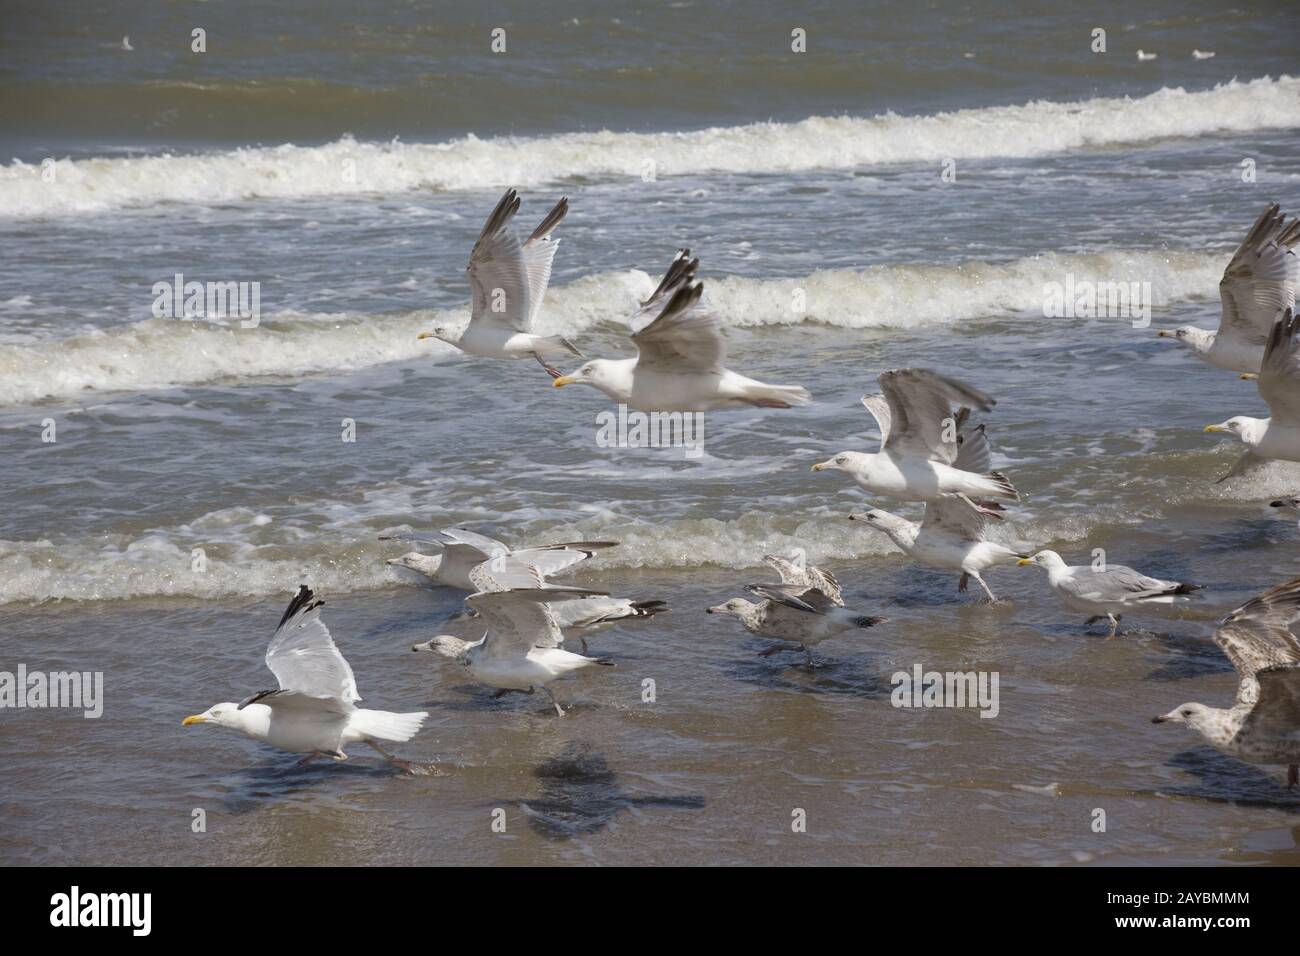 European herring gull in the surf zone Stock Photo